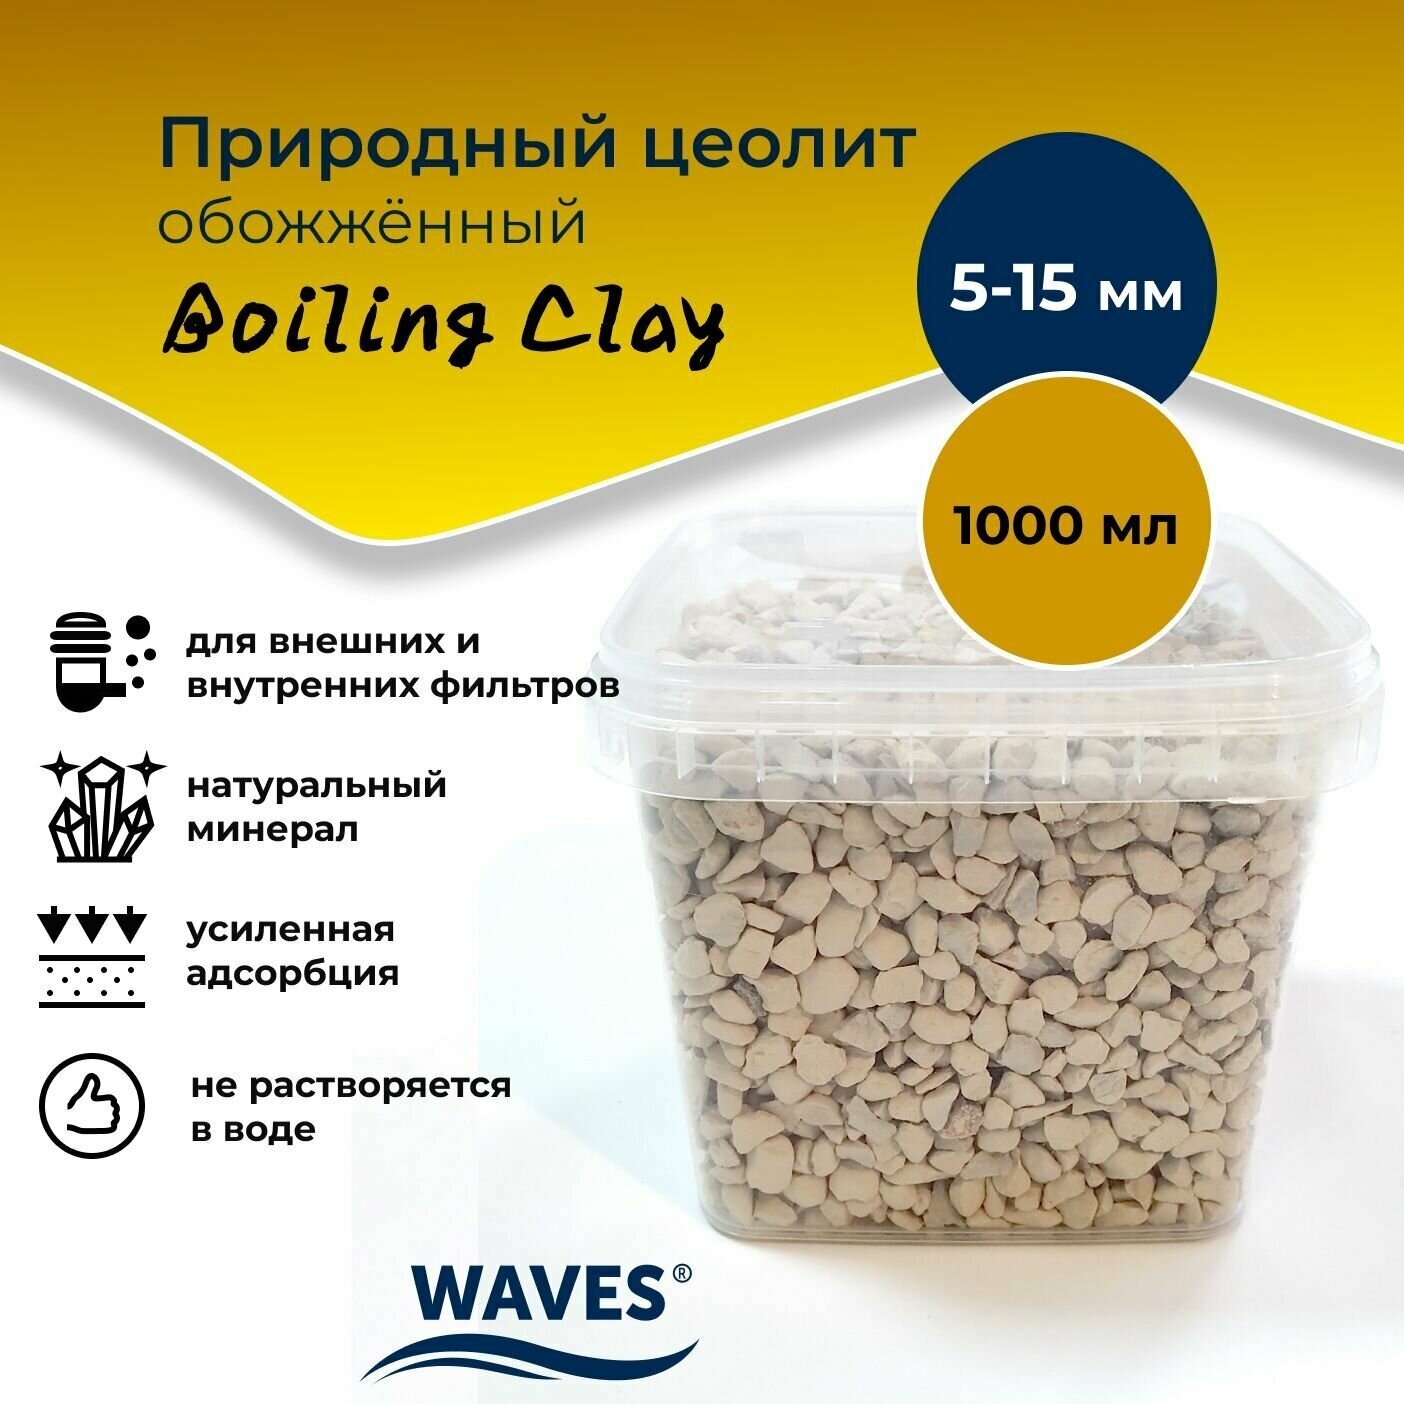 Природный цеолит обожжённый WAVES "Boiling Clay", для аквариума, фракция: 5-15 мм, 1000 мл, наполнитель для аквариумного фильтра